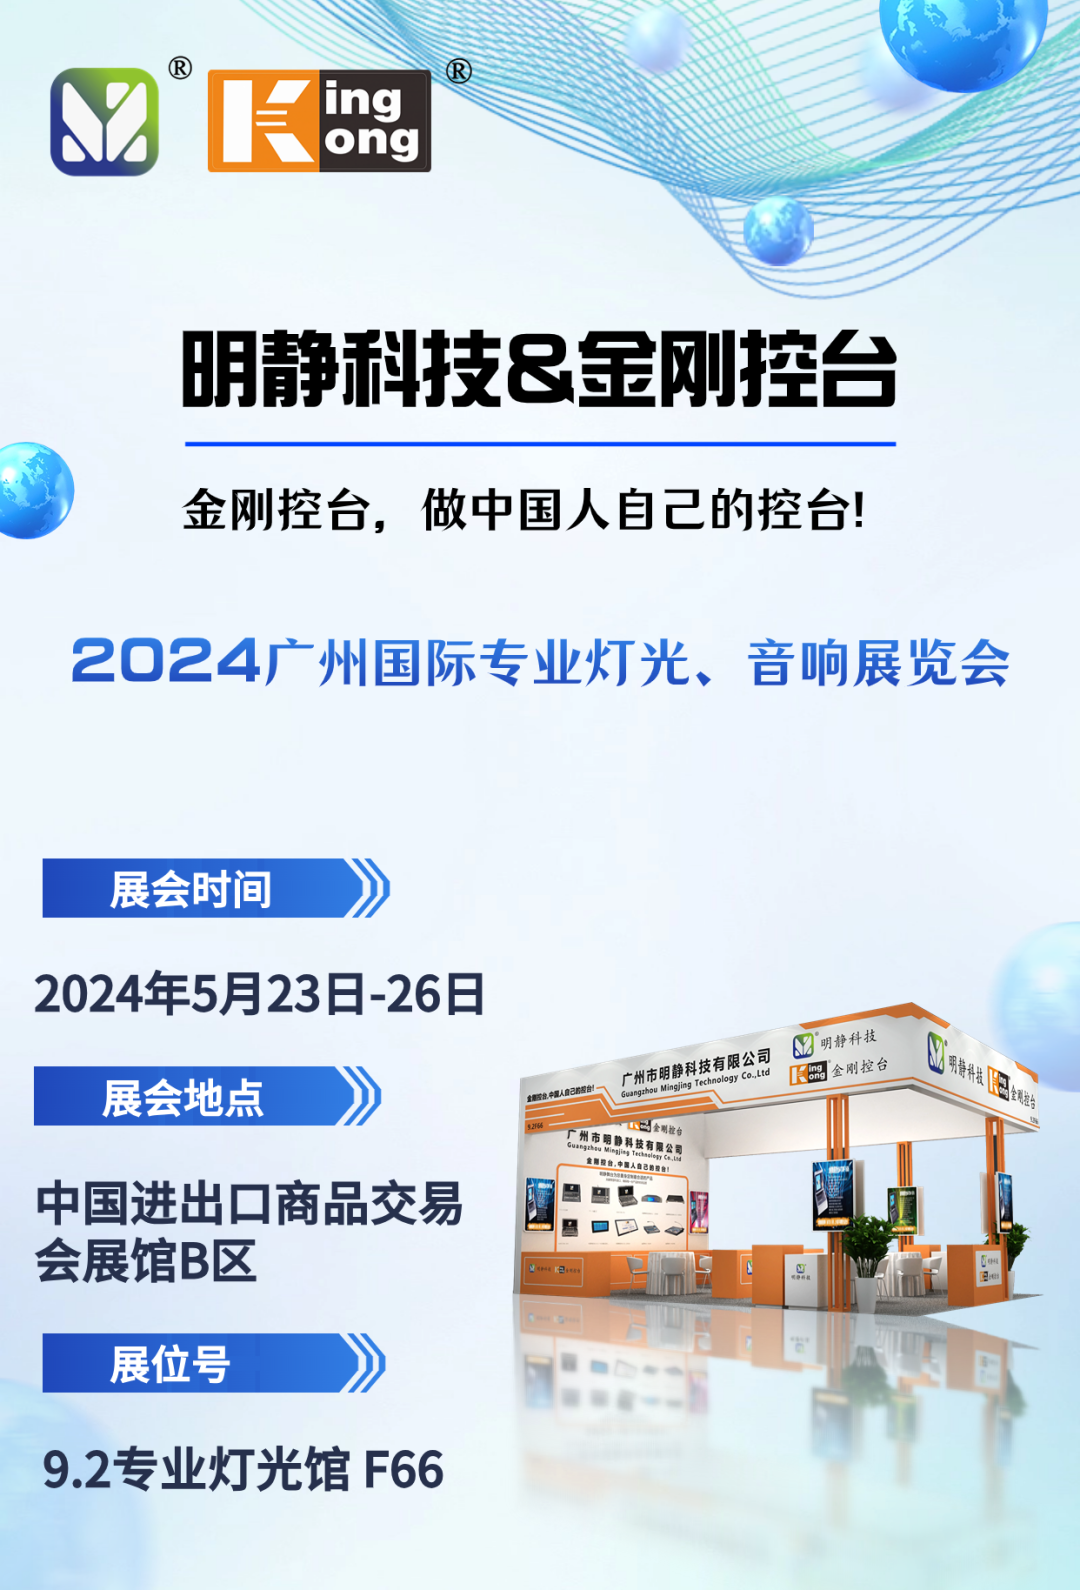 明静科技 | 金刚控台 2024年5月广州国际专业灯光、音响展邀请您来观展